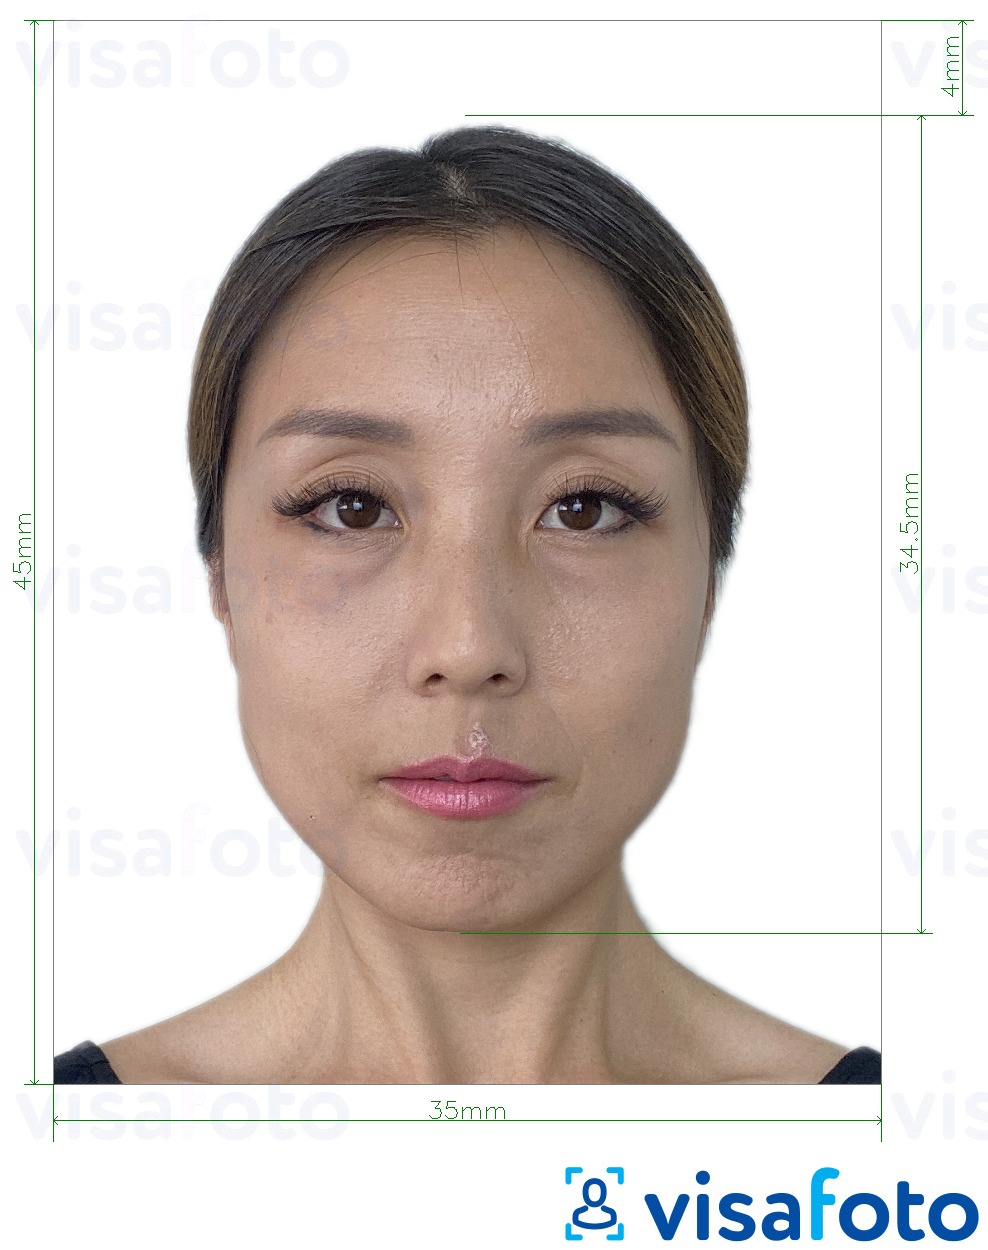 Voorbeeld van foto voor Macau resident-identiteitskaart (BIR) 45x35 mm met exacte maatspecificatie